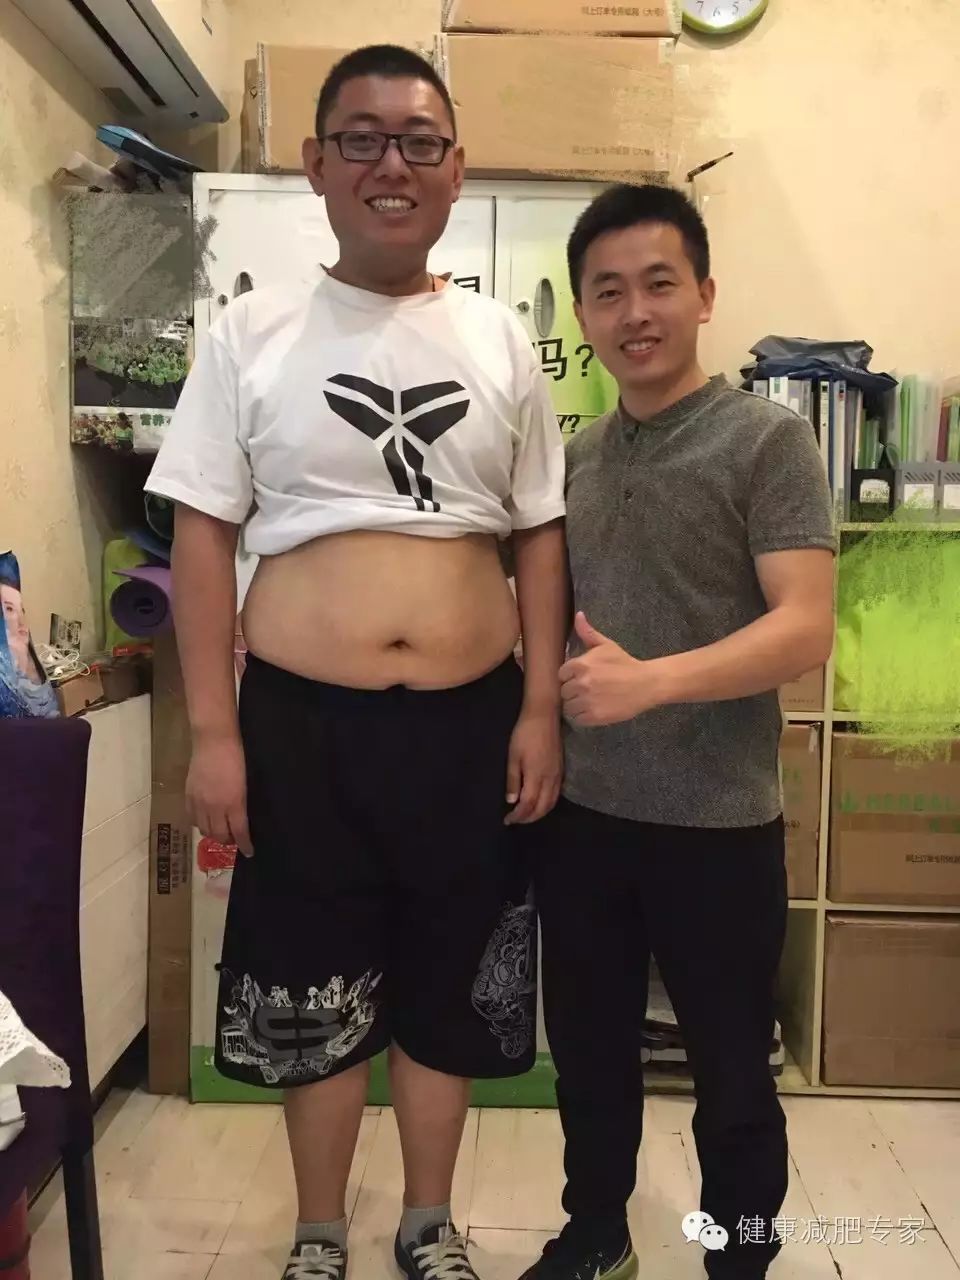 【效果分享】it男5个月减掉肥肉48.7斤